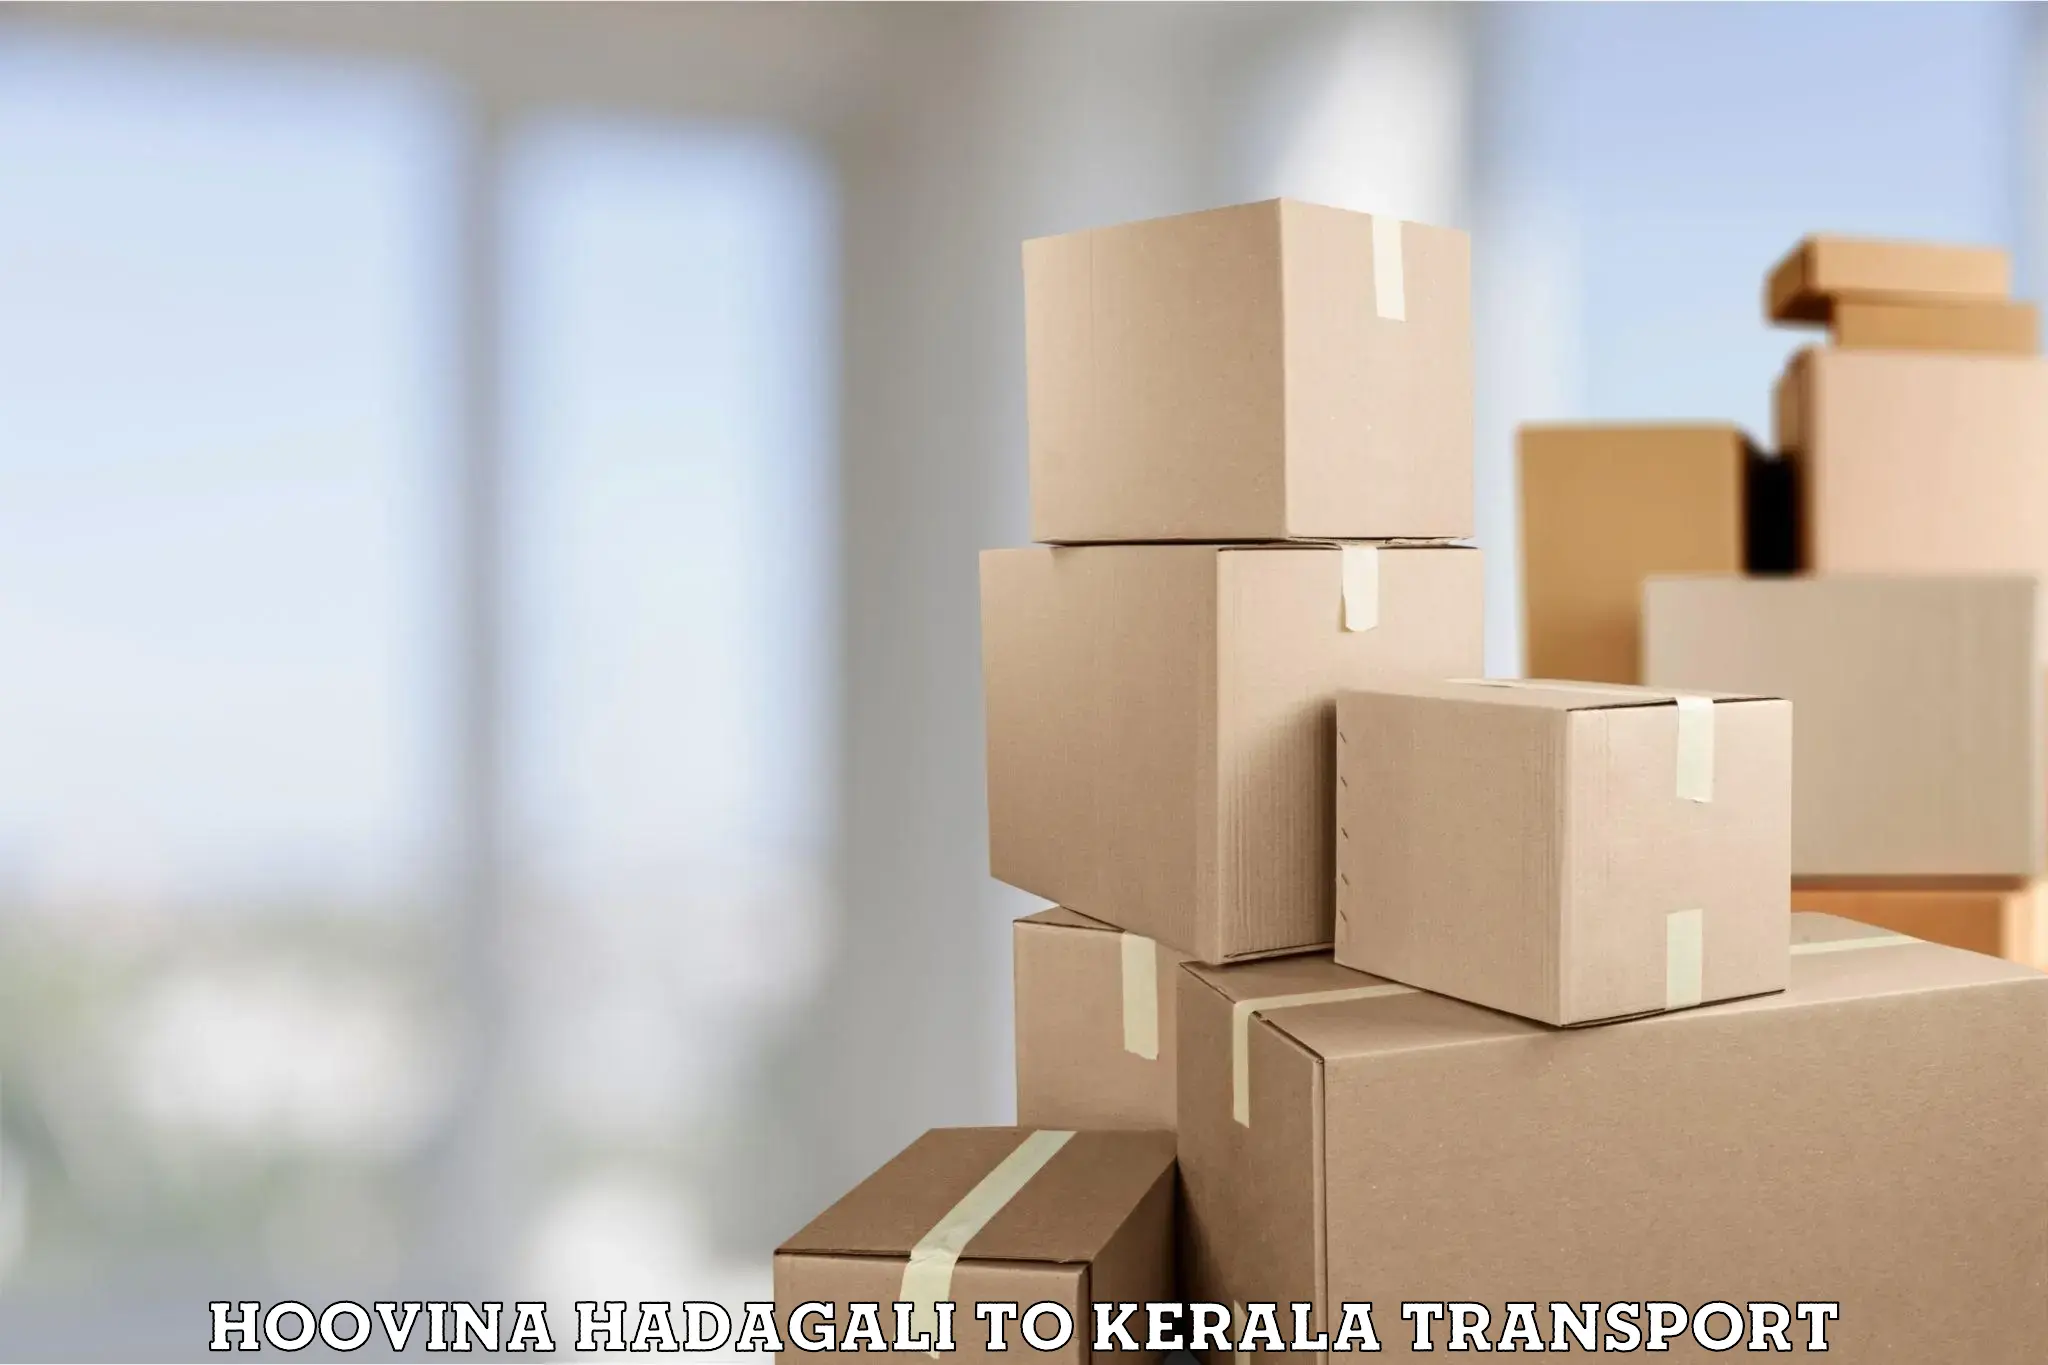 Daily transport service Hoovina Hadagali to Kerala